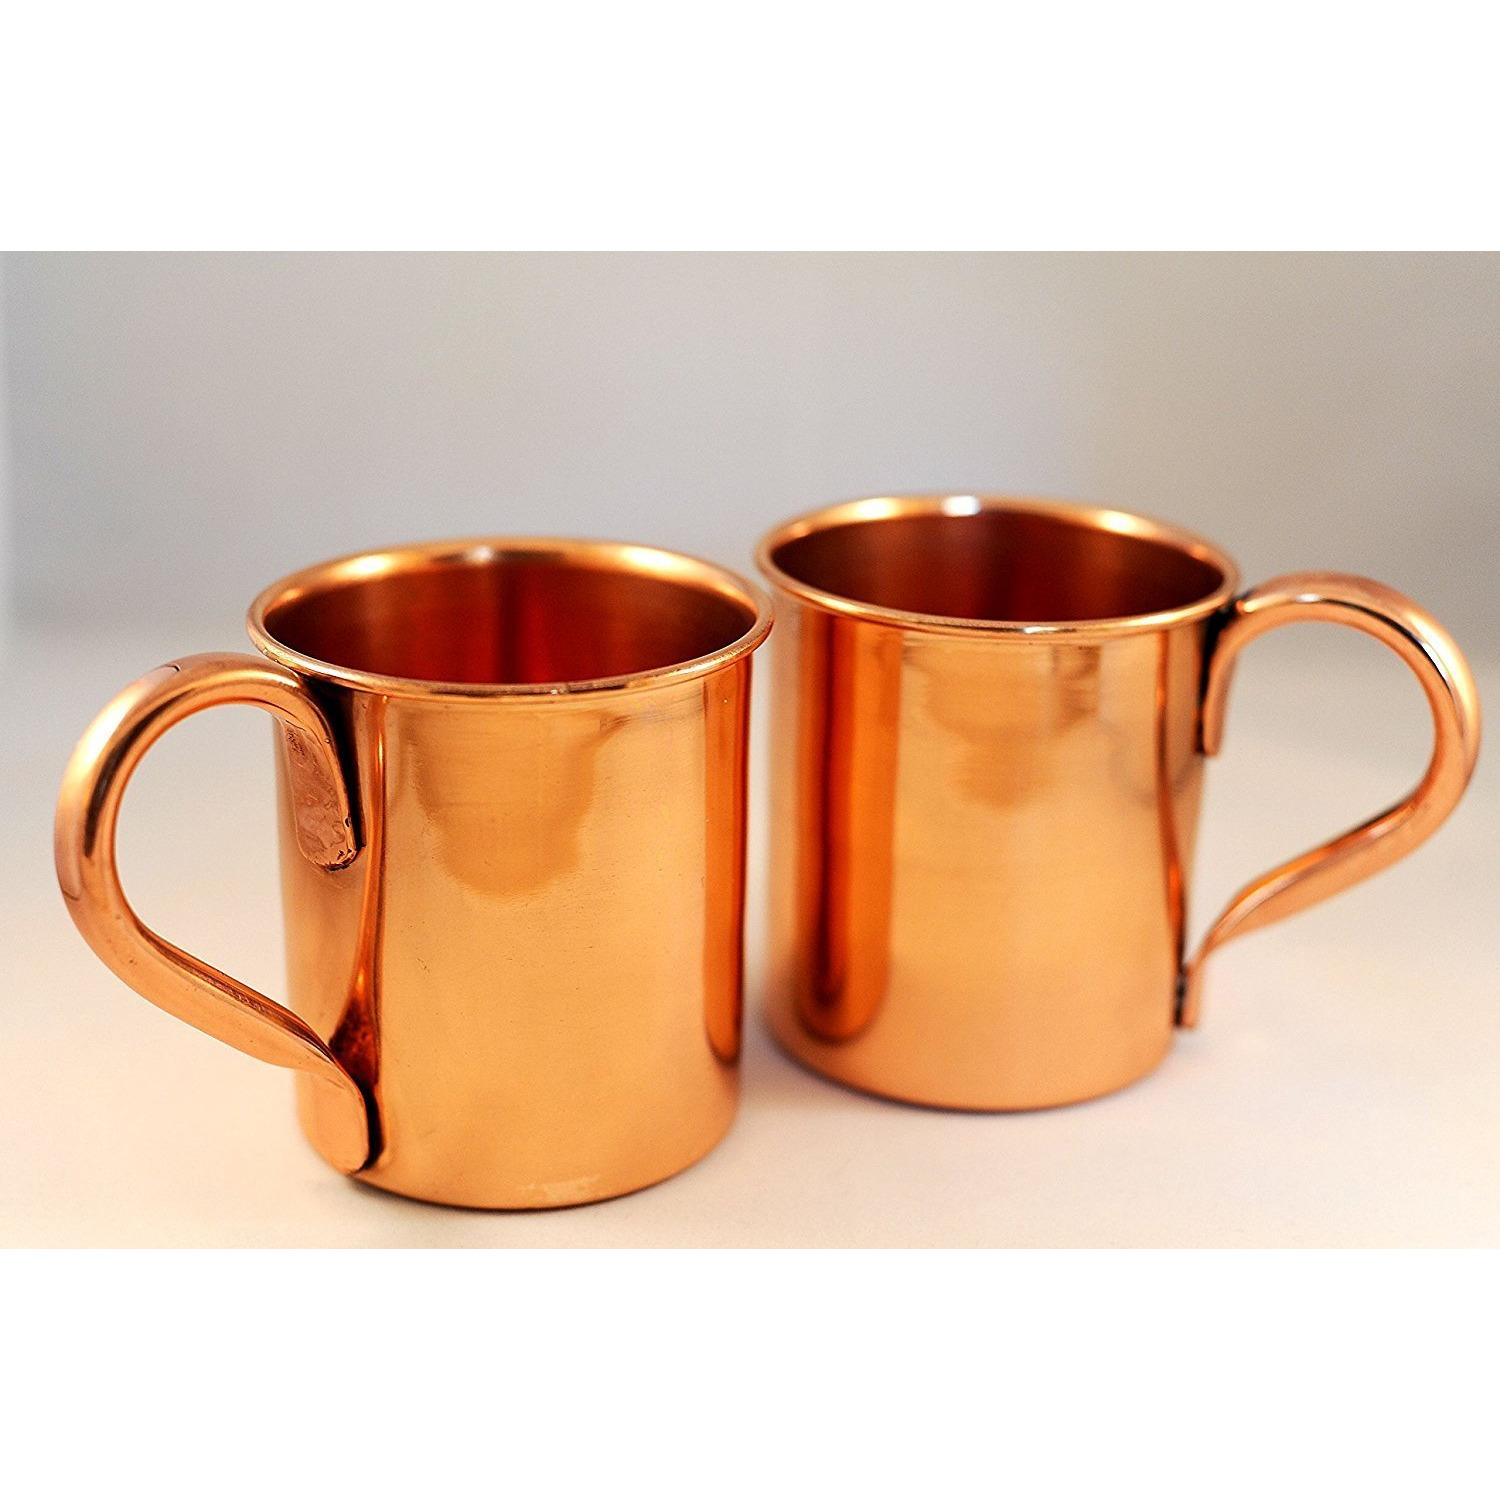 Winmaarc 100% Pure Heavy Gauge Copper Moscow Mule Mugs Set of 2 15 OZ